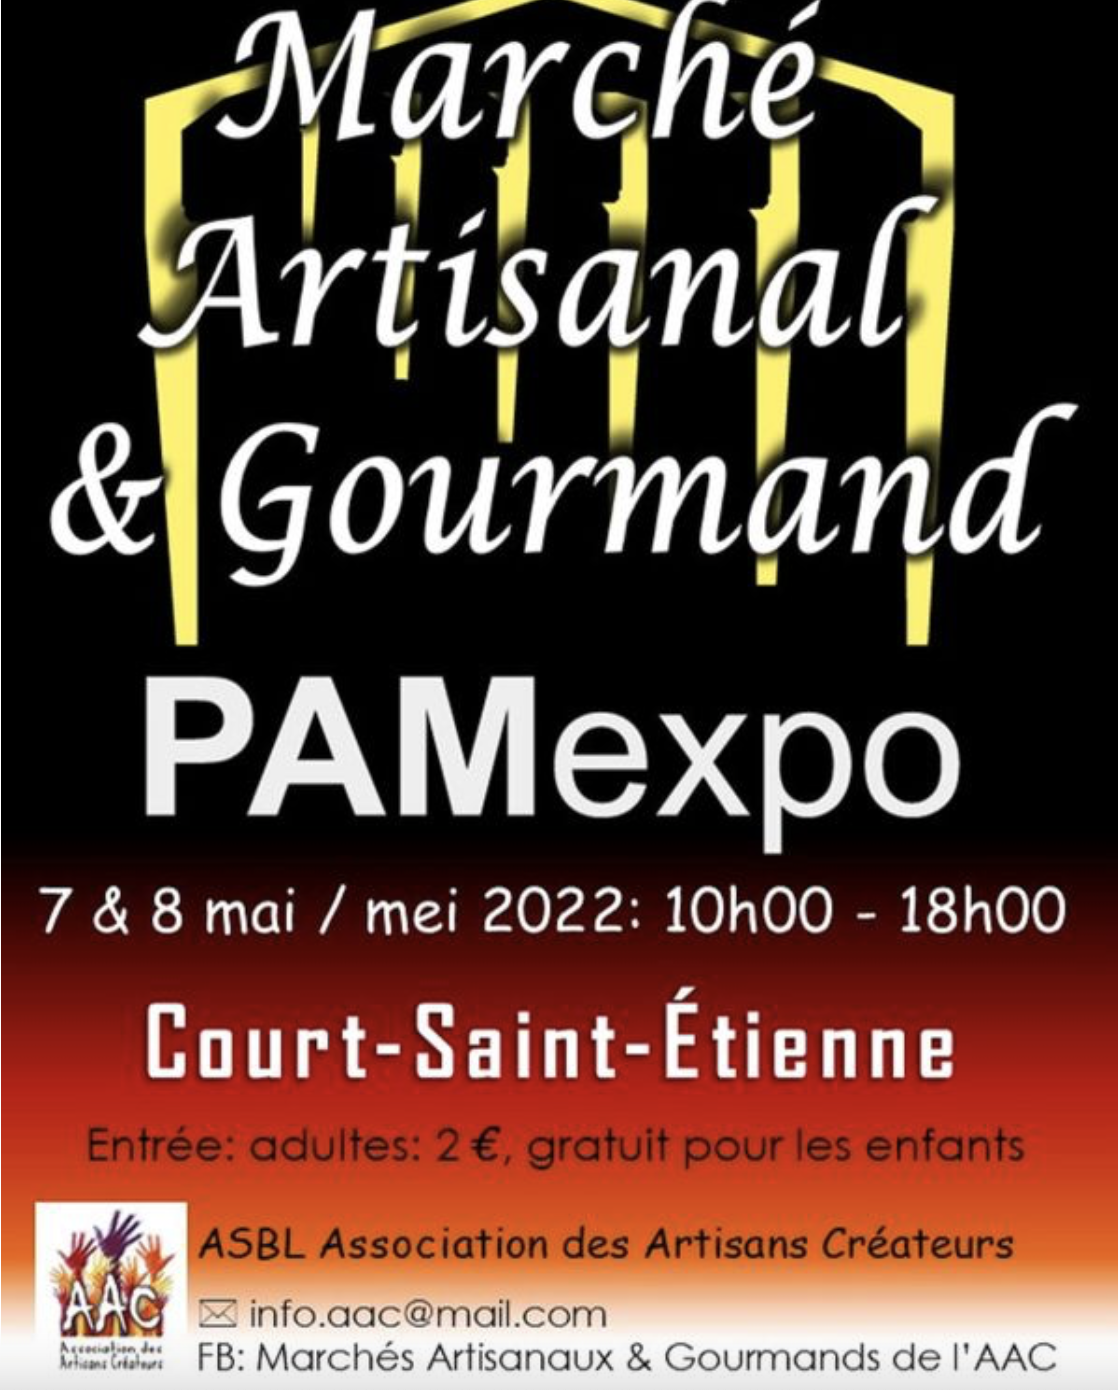 Marché Artisanal et Gourmand | Du 7 au 8 mai 2022 | Court-Saint-Etienne